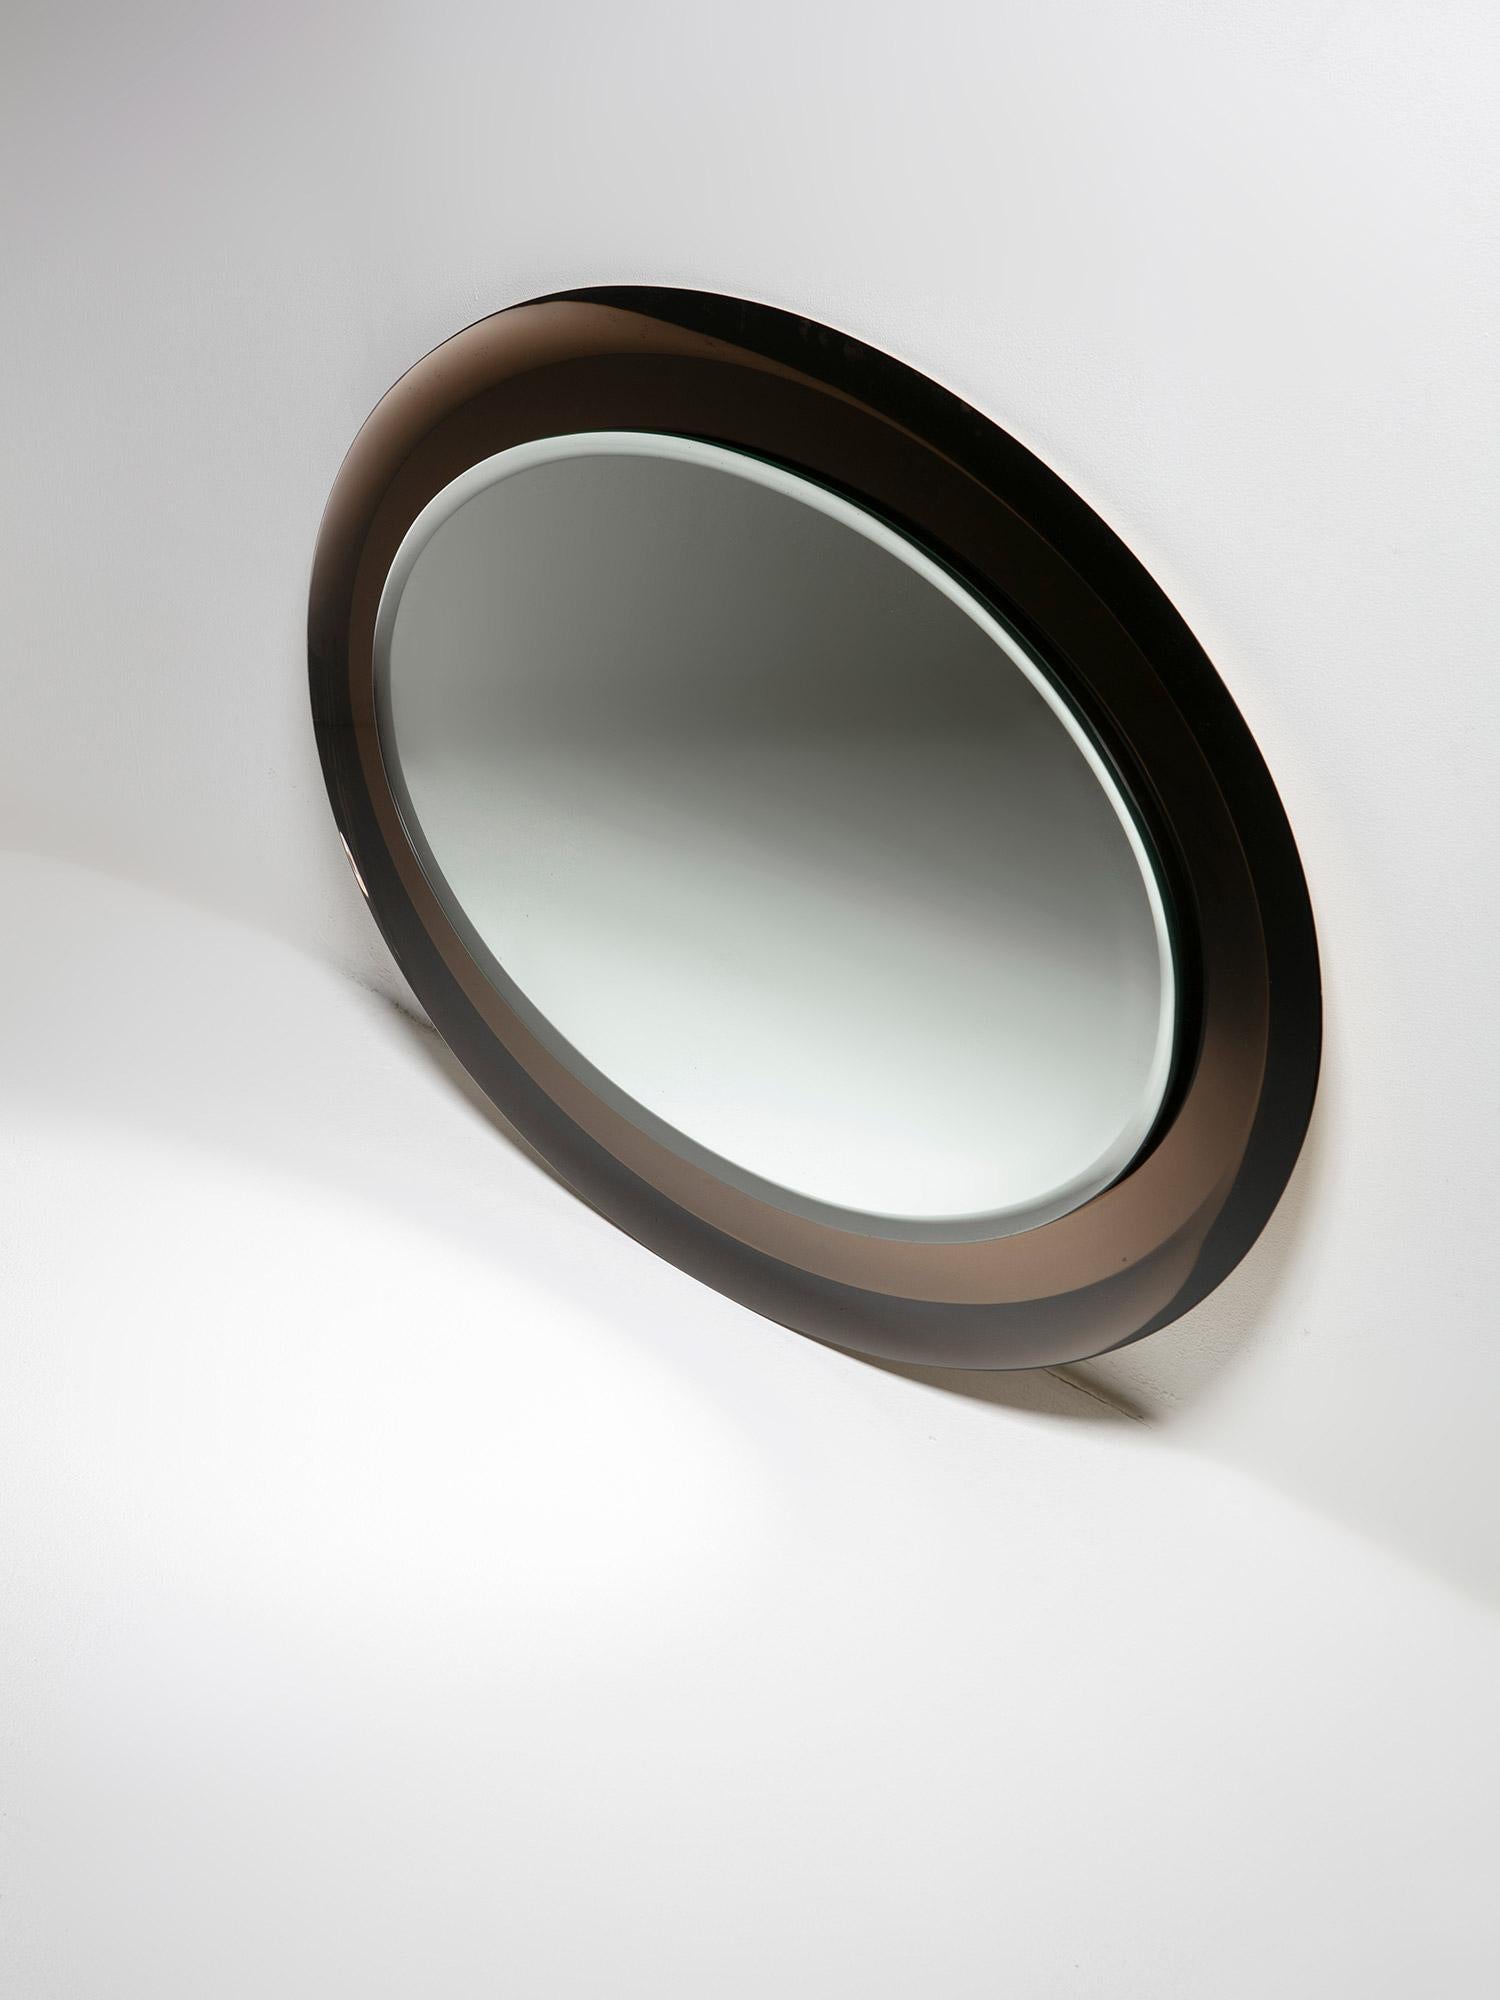 Miroir ovale doublement biseauté de Metalvetro, Sienne.
Le cadre marron frais et décoloré soutient la pièce centrale.
Label original en papier au verso